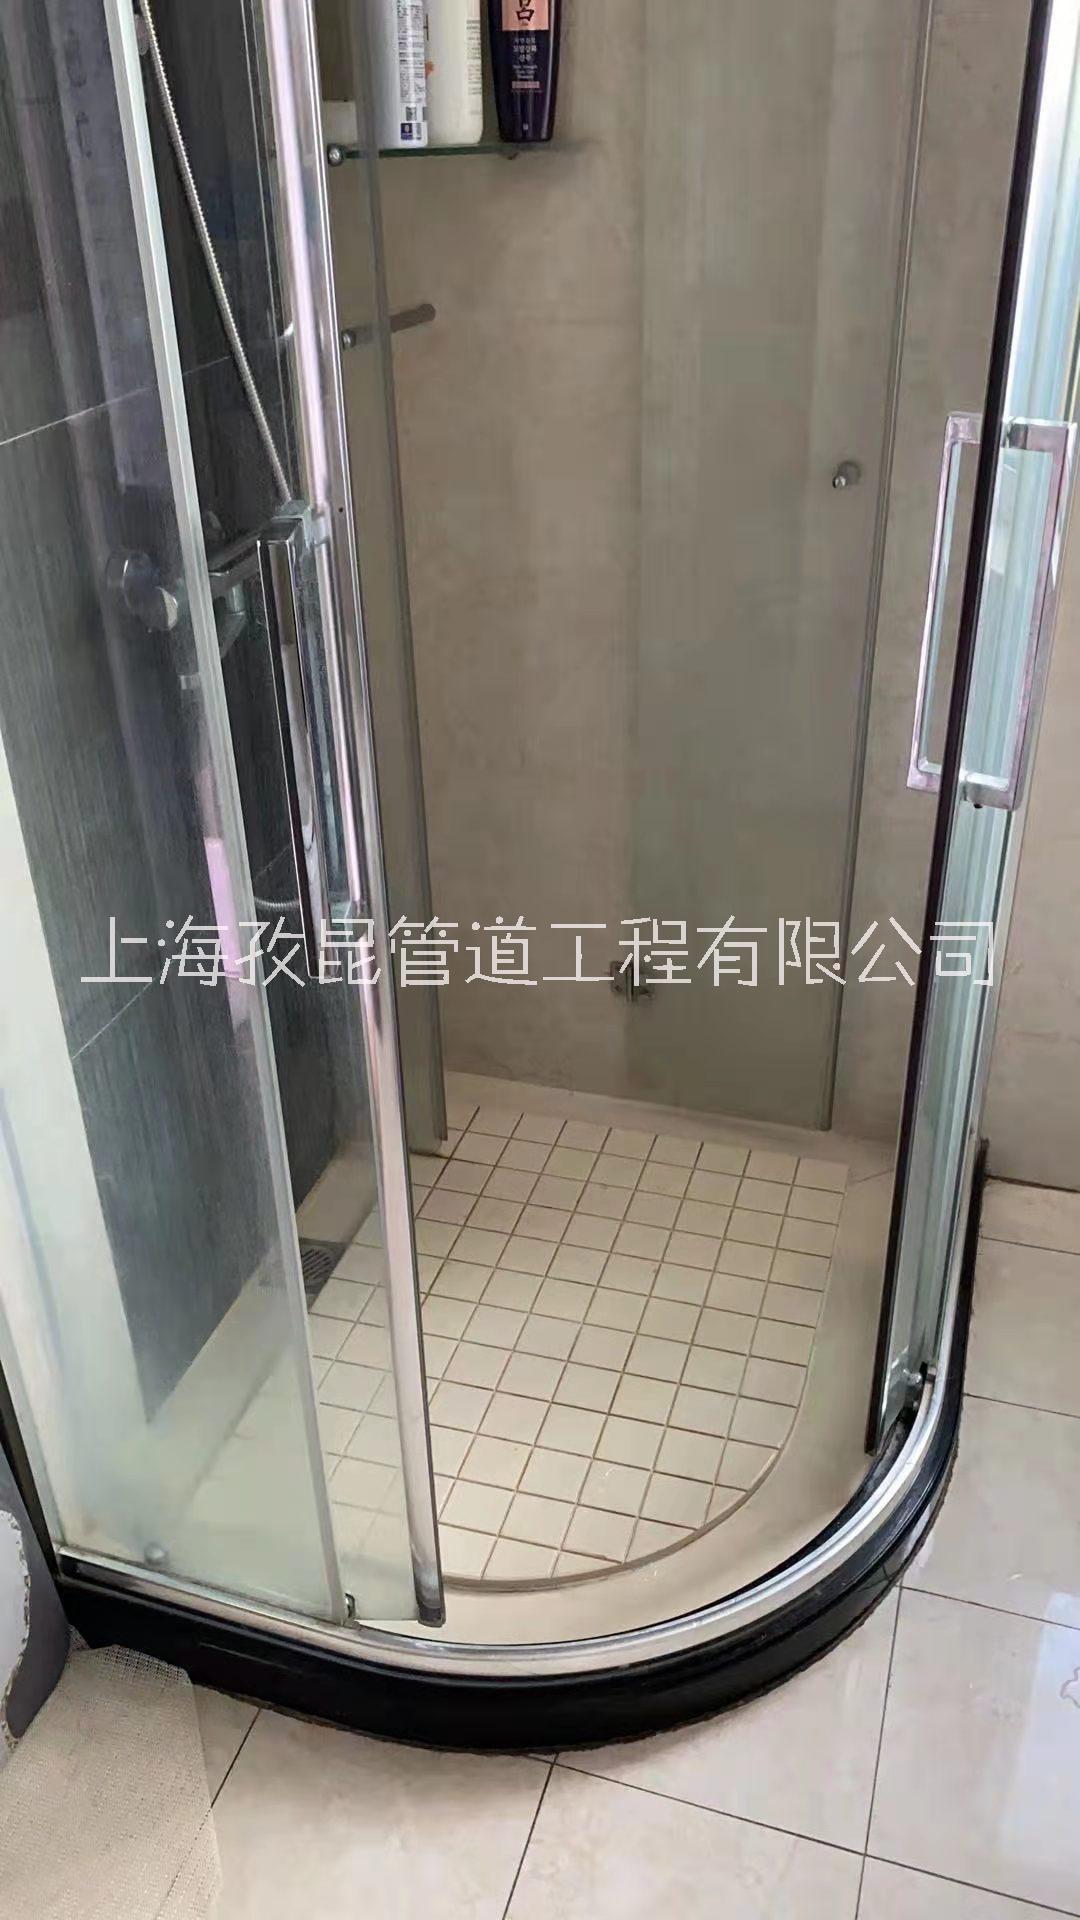 上海德立淋浴房维修移门卡了 淋浴房维修价格 淋浴房修理电话号码